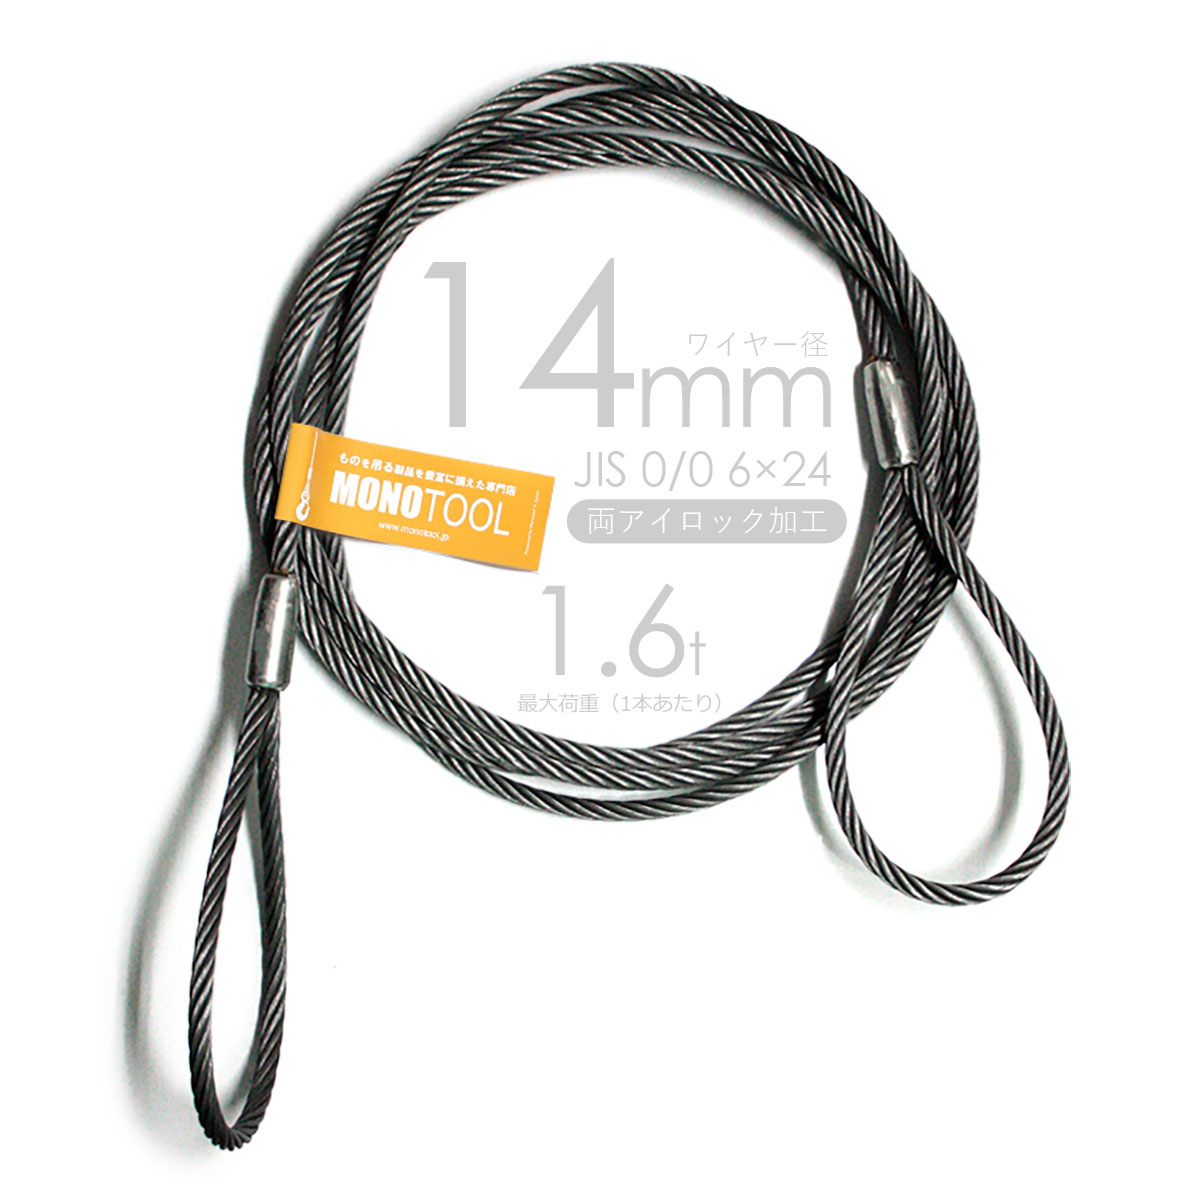 玉掛けワイヤーロープ 10本組 片シンブル・片アイ 黒(O/O) 24mmx7m JISワイヤーロープ